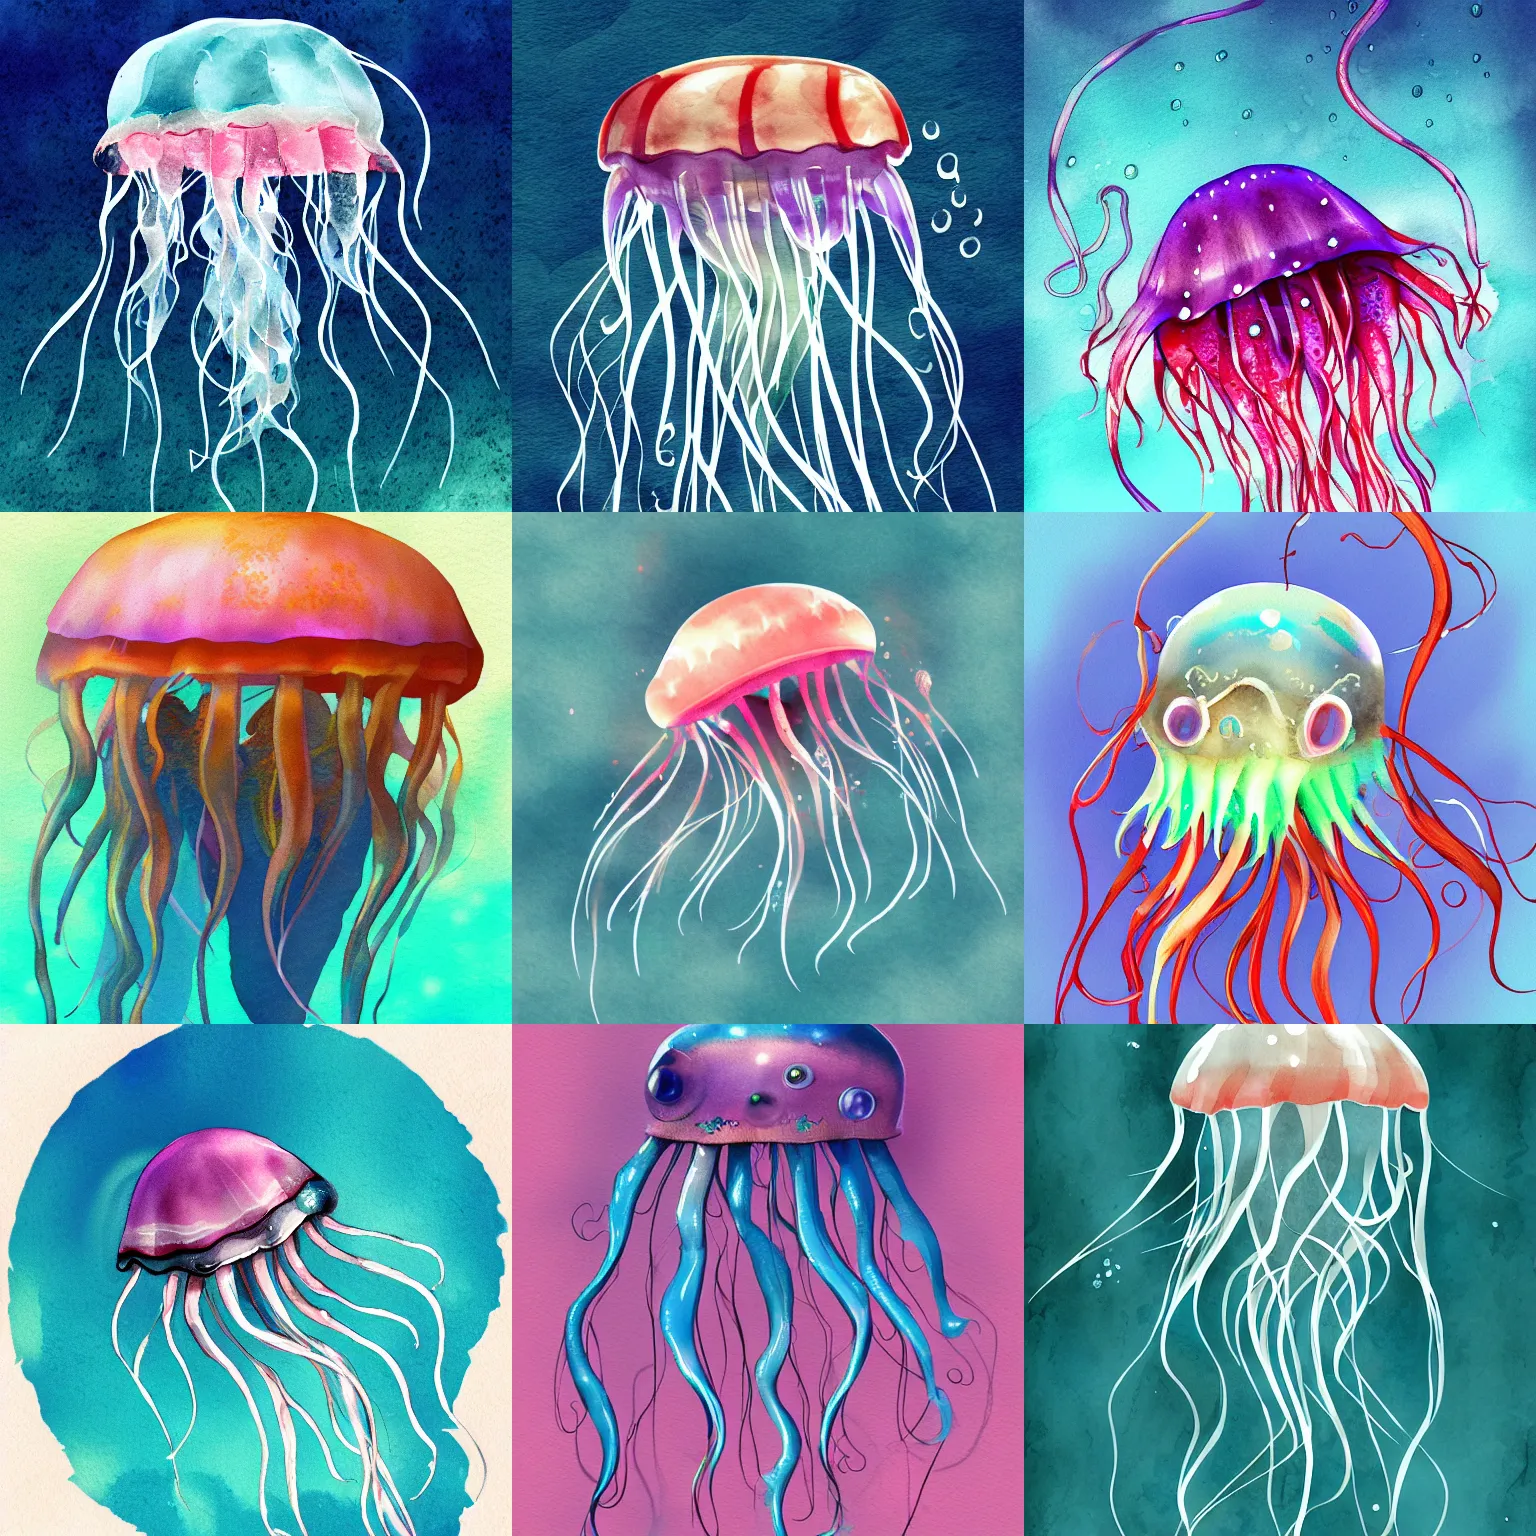 Prompt: jellyfish wearing glasses, underwater, digital watercolor, artstation